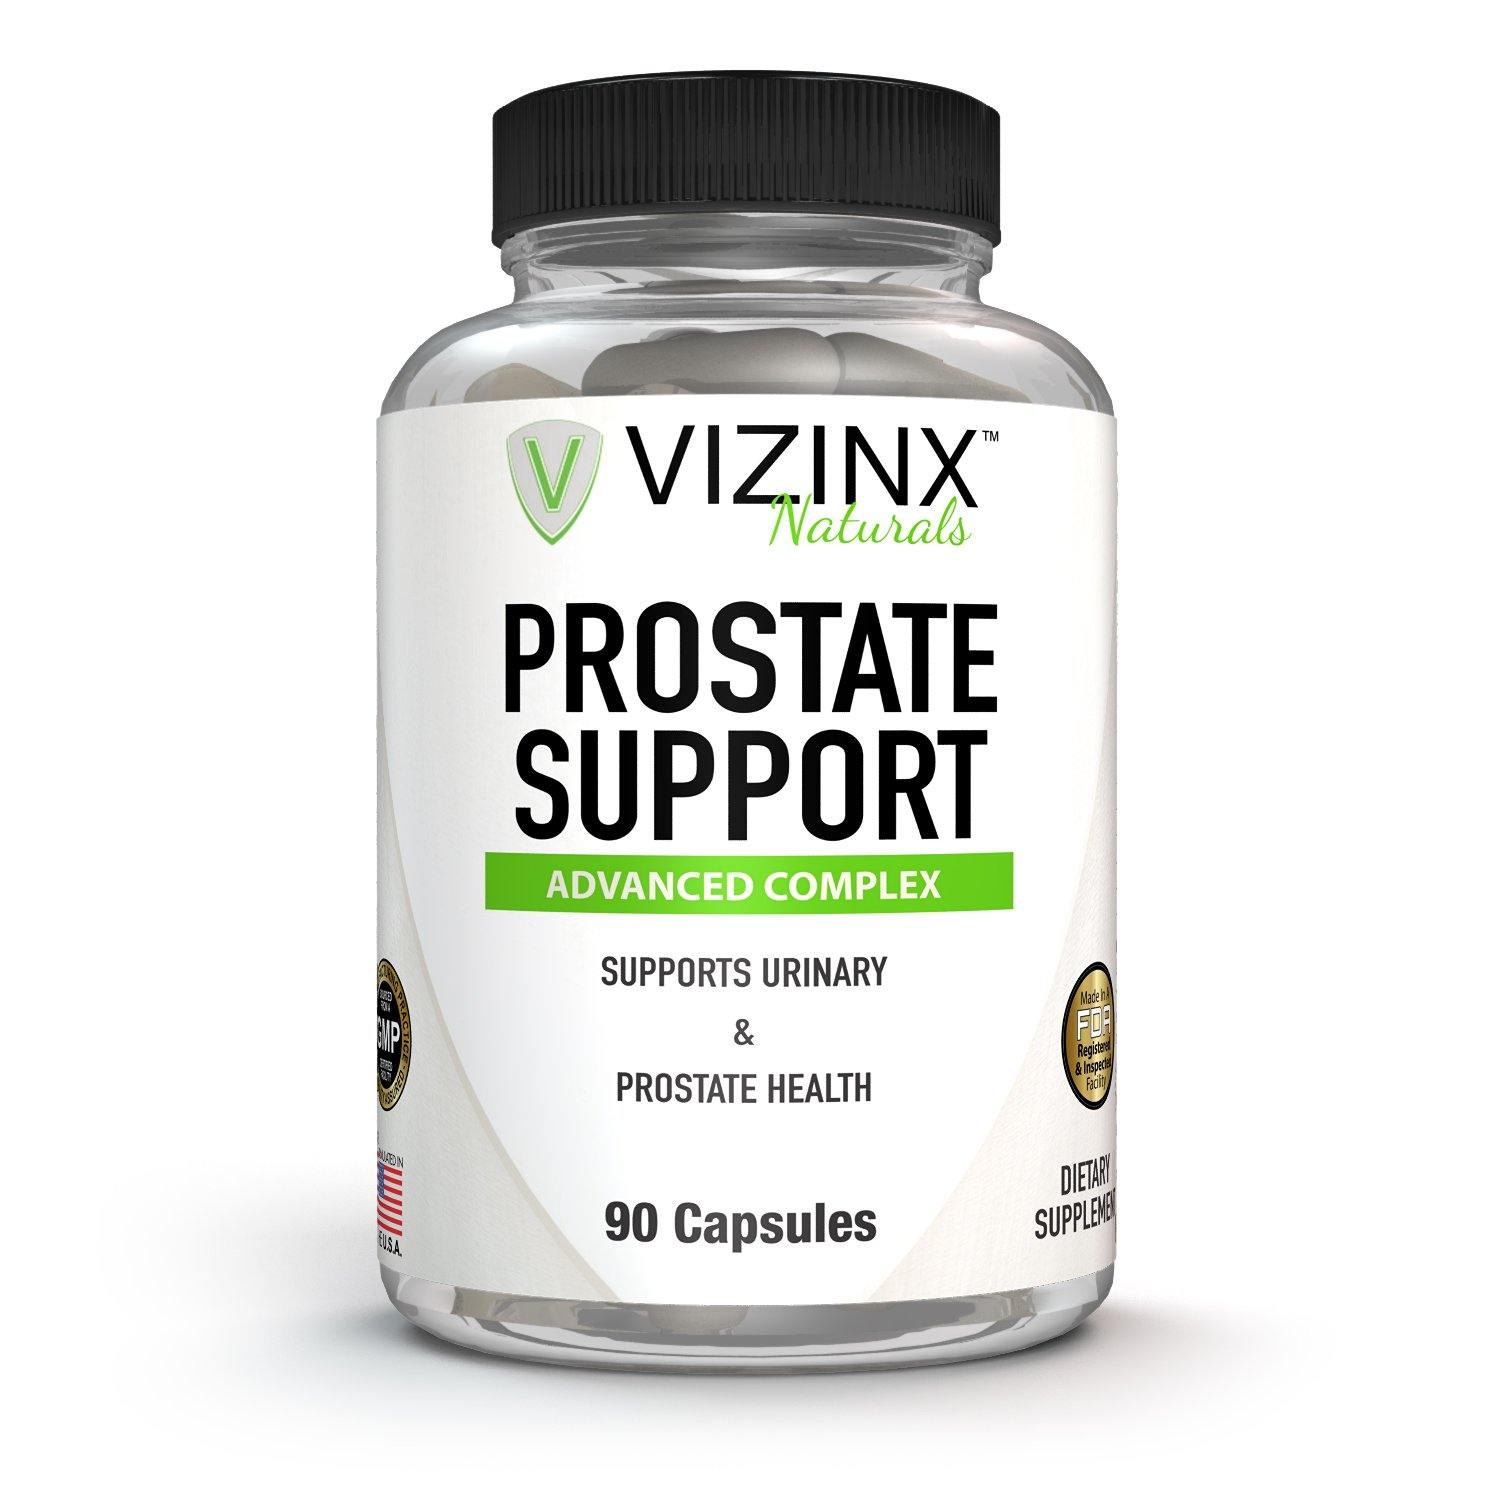 Prostate Support Supplement - VIZINX